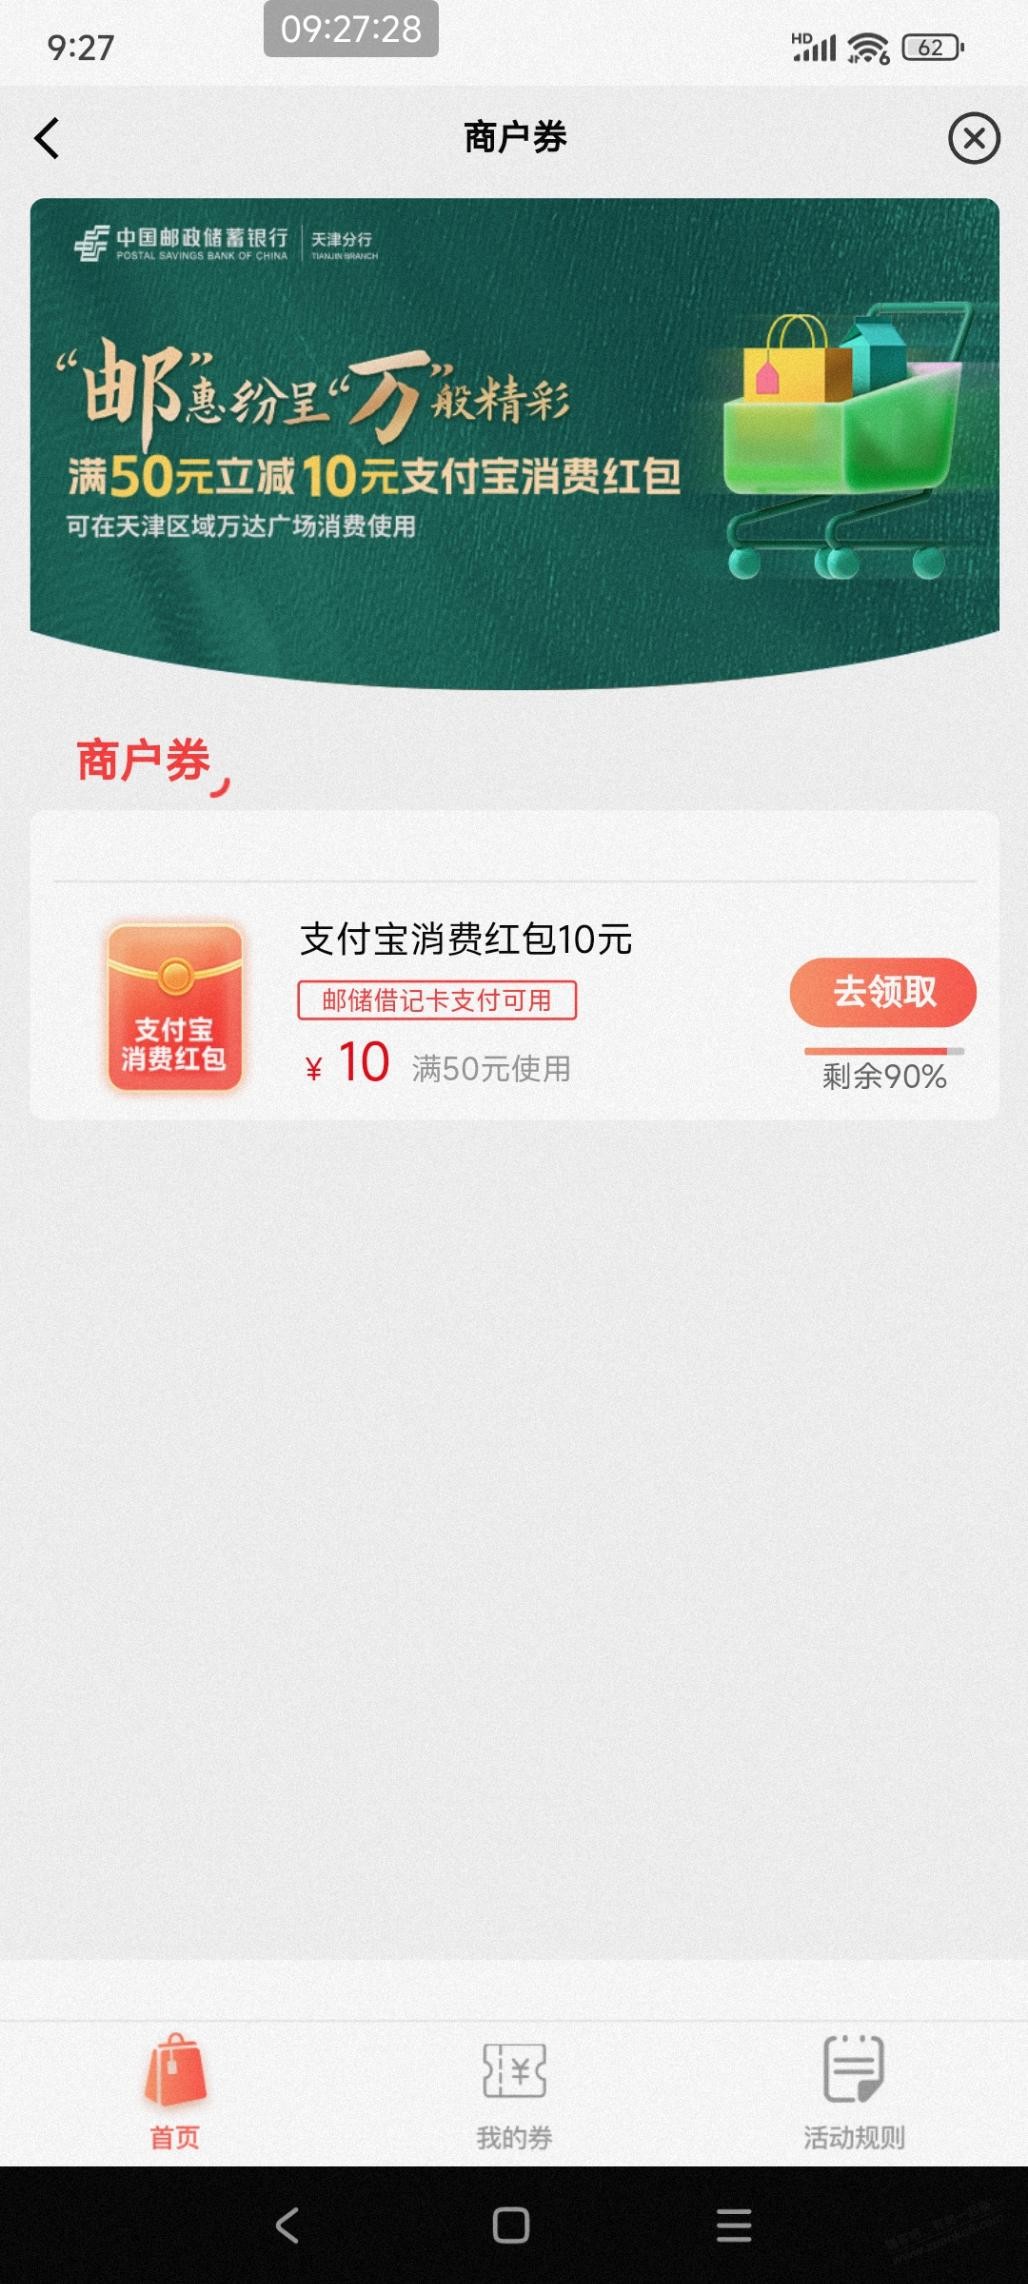 天津邮储支付宝50-10速度领-惠小助(52huixz.com)